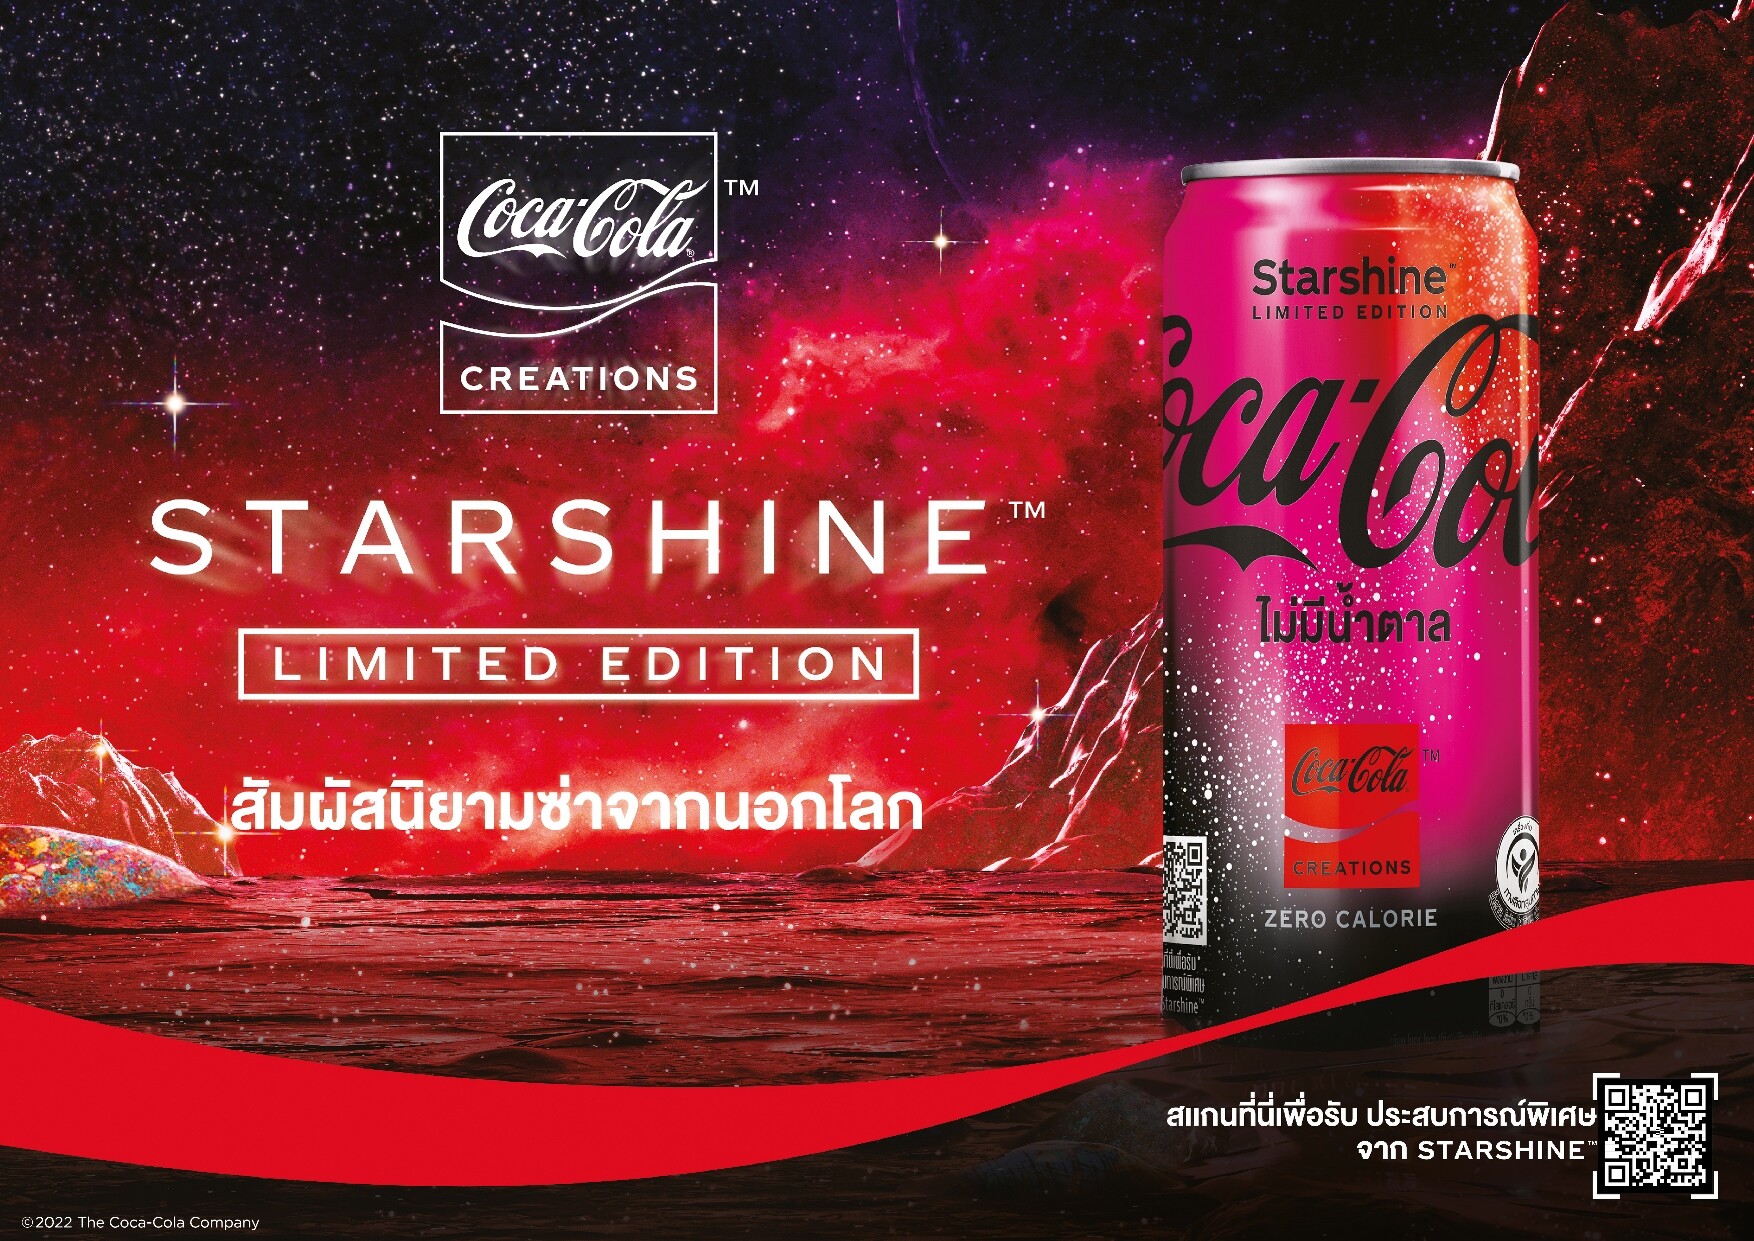 สัมผัสนิยามซ่าจากนอกโลก! ครั้งแรกกับ "Coca-Cola Starshine(TM)" รุ่น Limited Edition